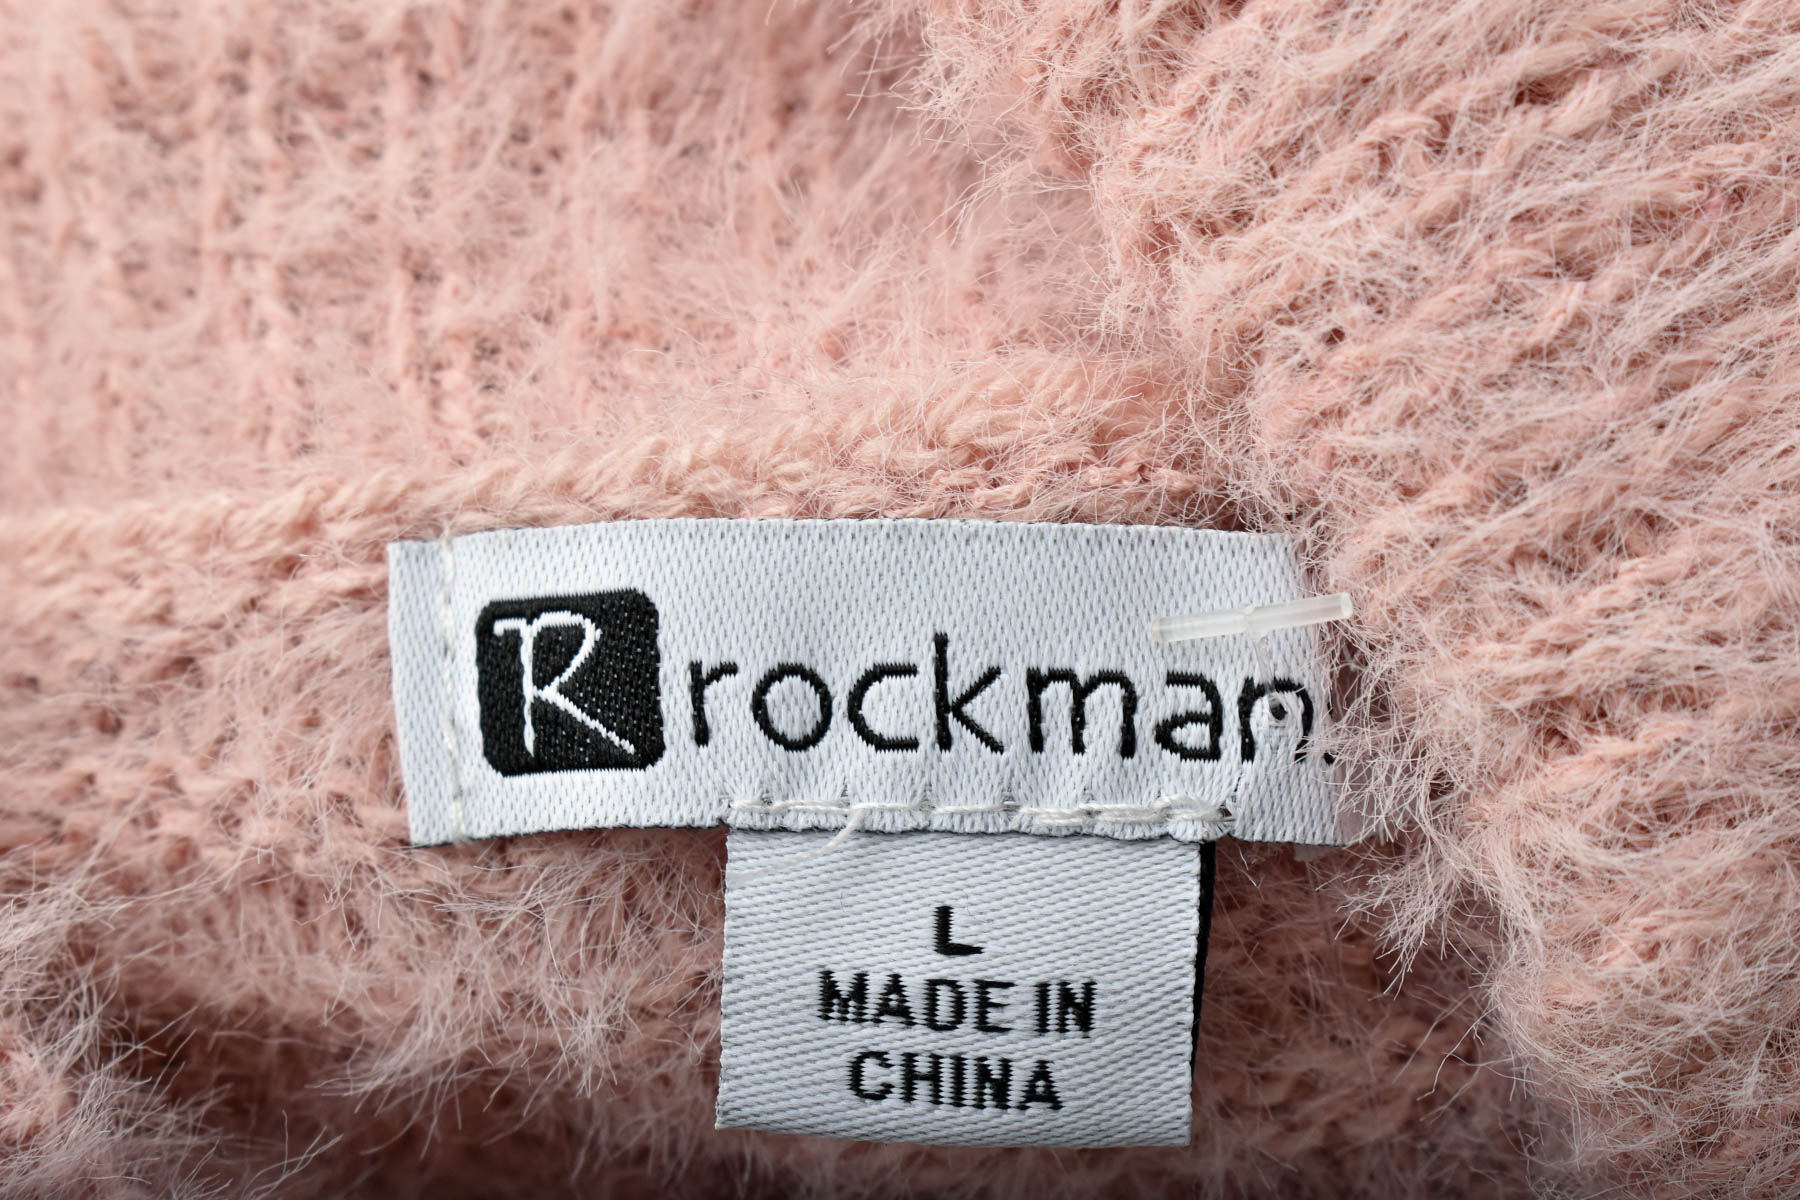 Women's sweater - Rockmans - 2